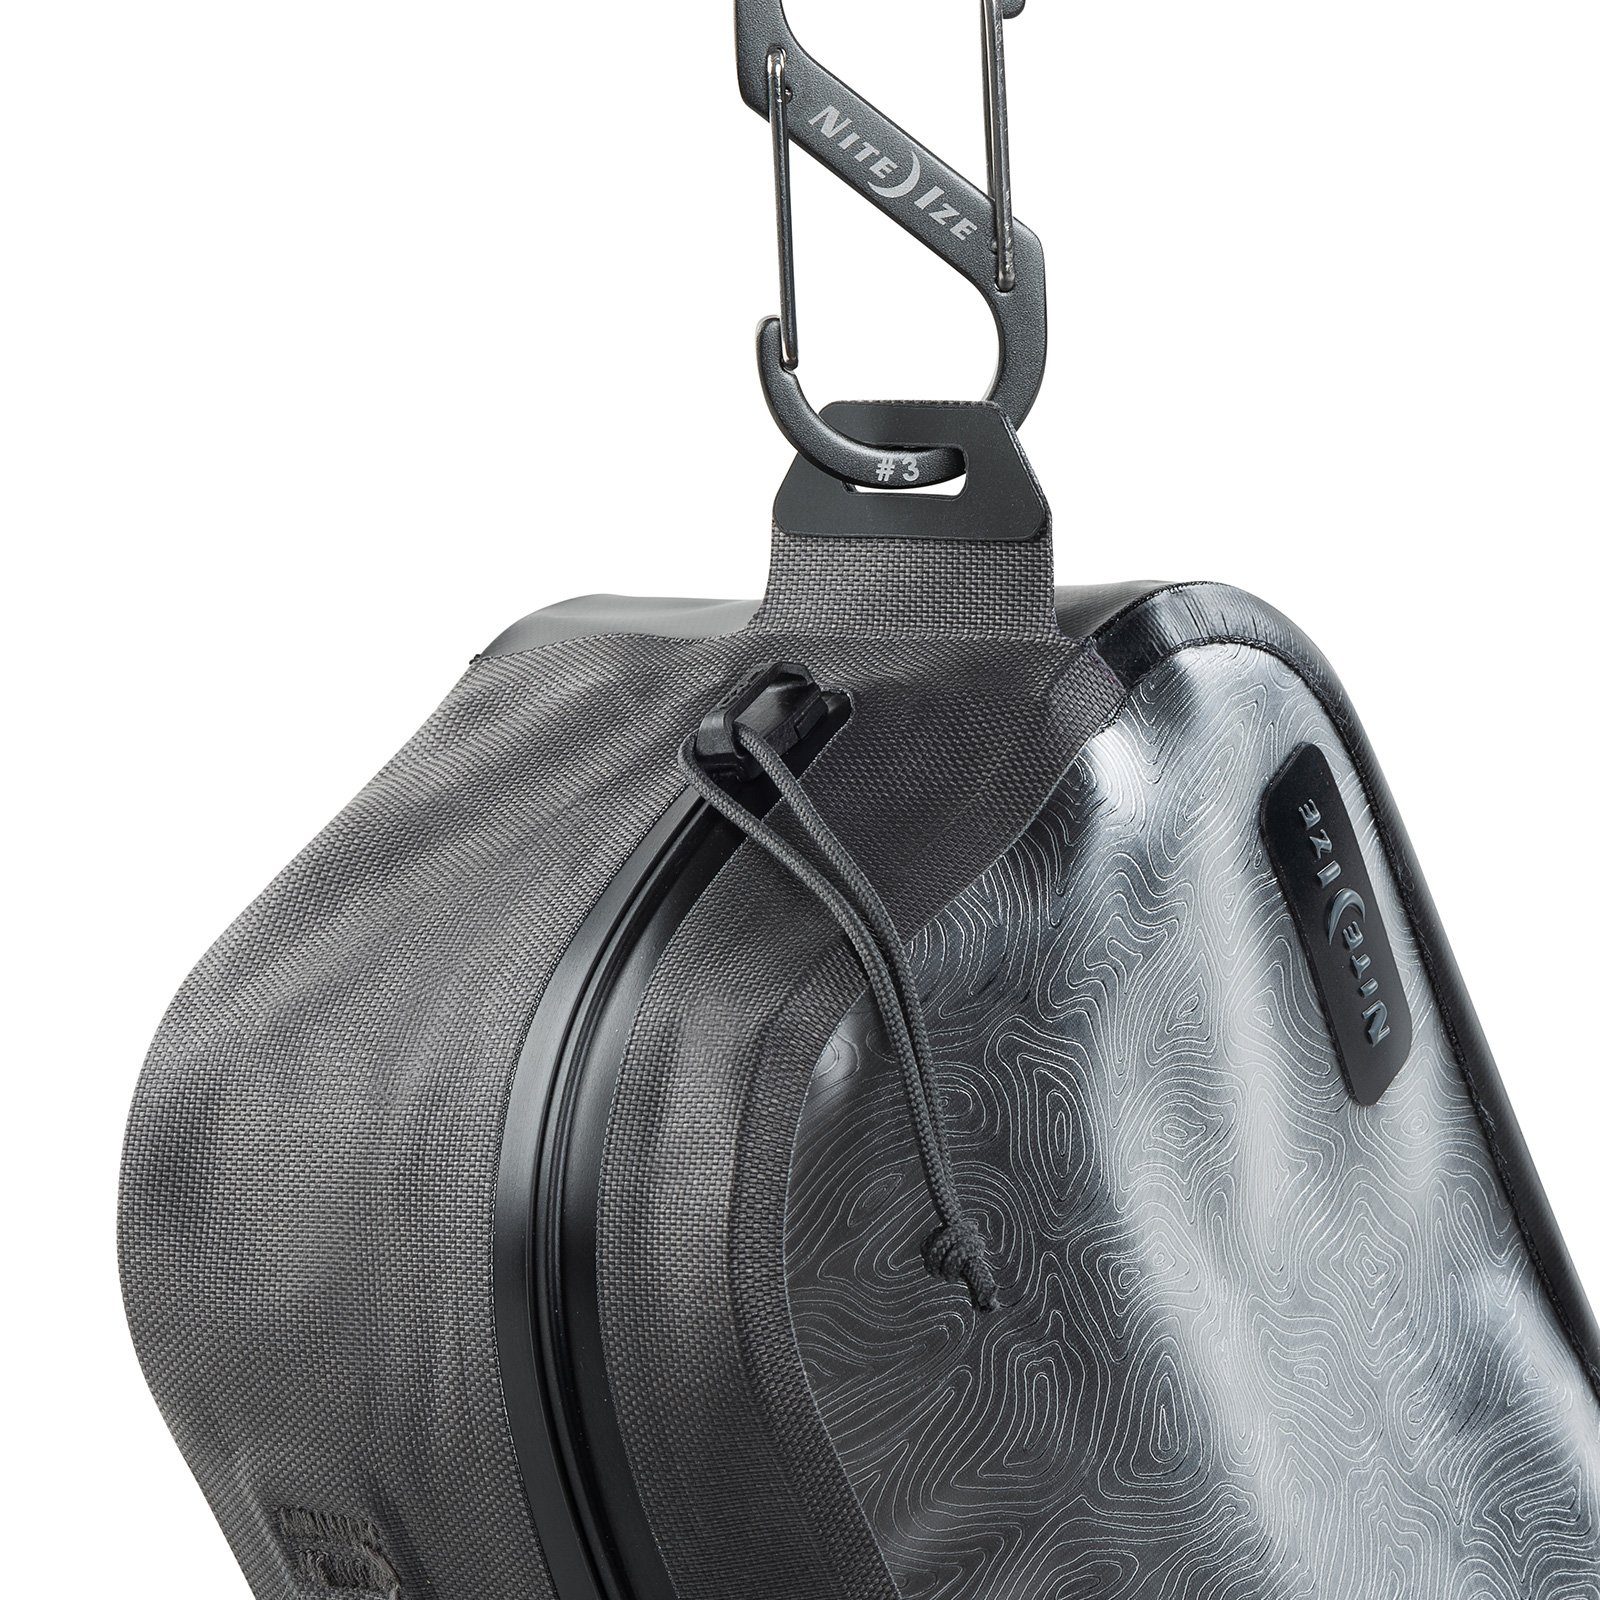 Nite Ize Packsack Tasche Wasserdicht Bag Pack Wasser IP67 RunOff Dry, Beutel Sport Camping